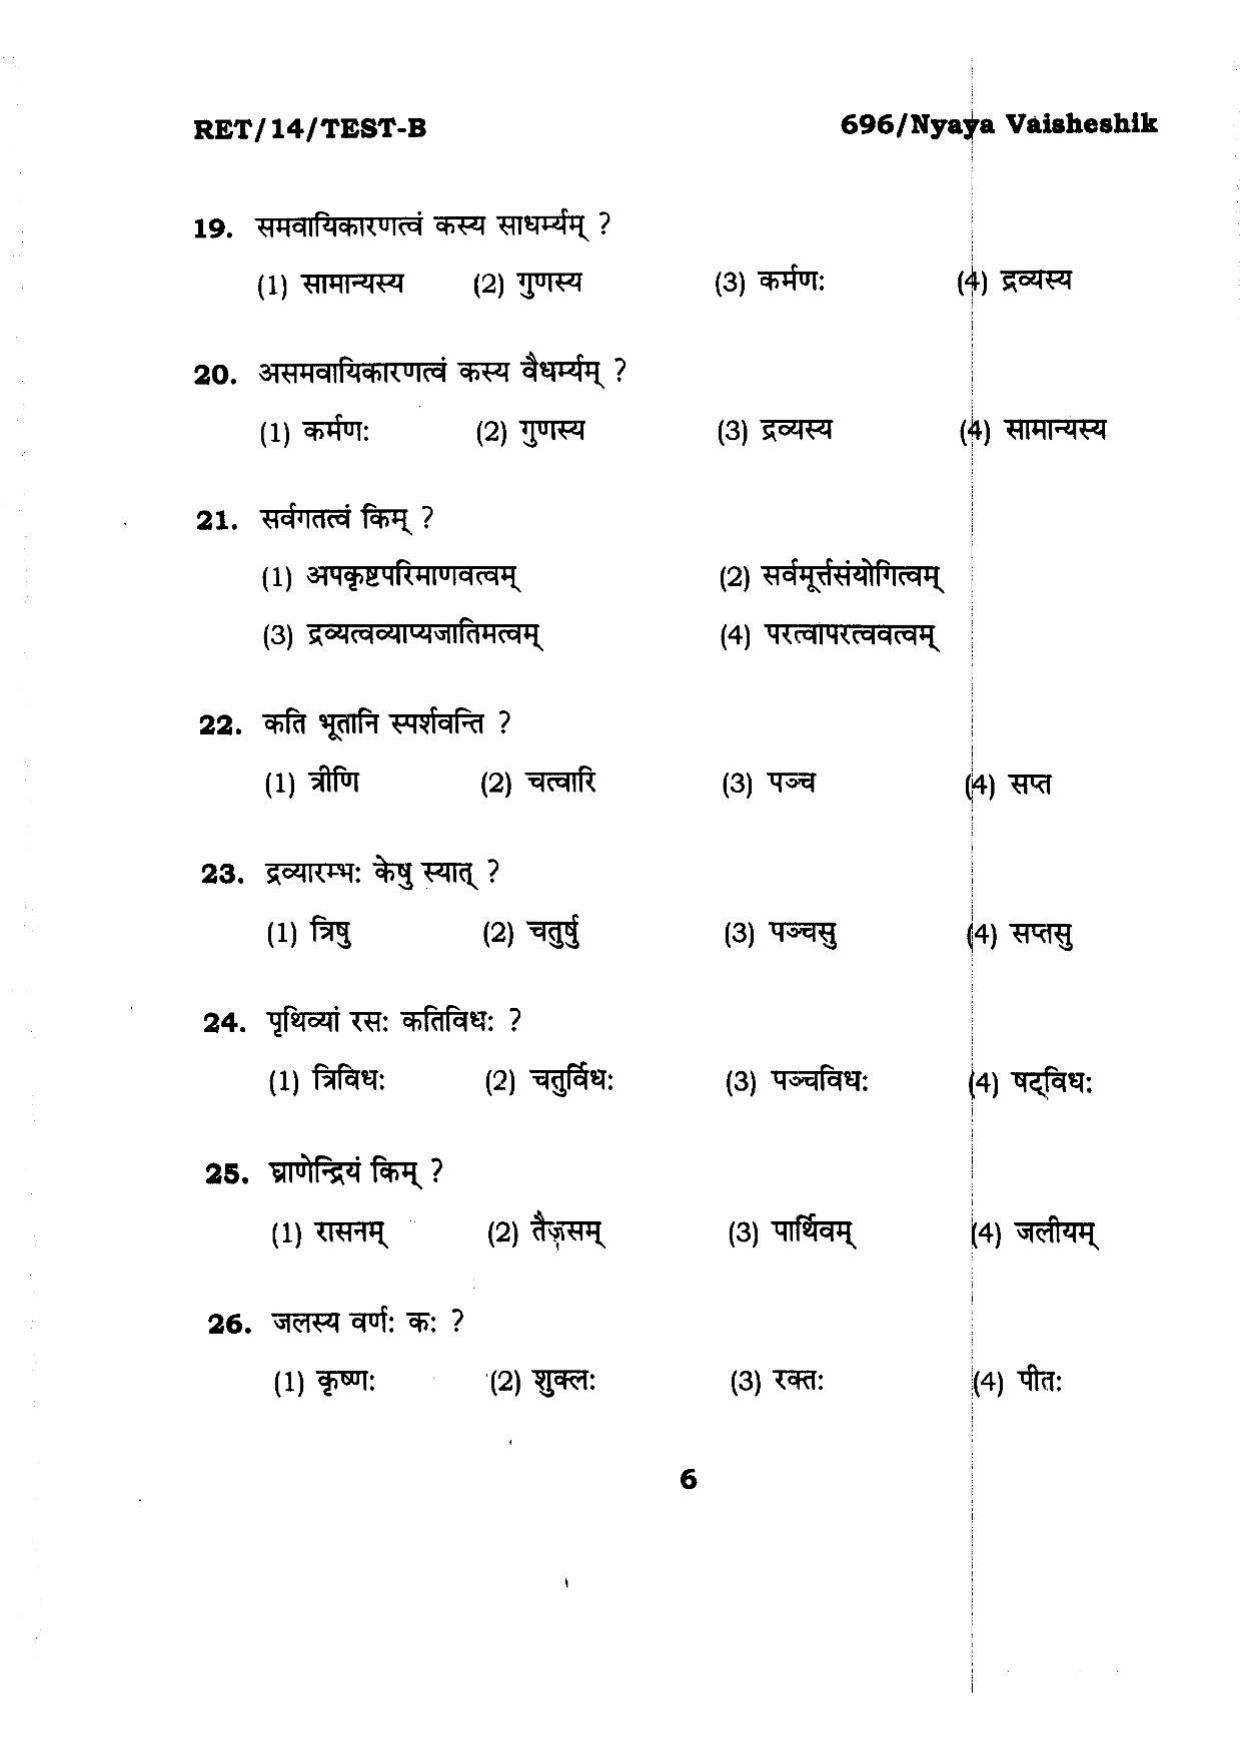 BHU RET Nyaya Vaisheshik 2014 Question Paper - Page 6